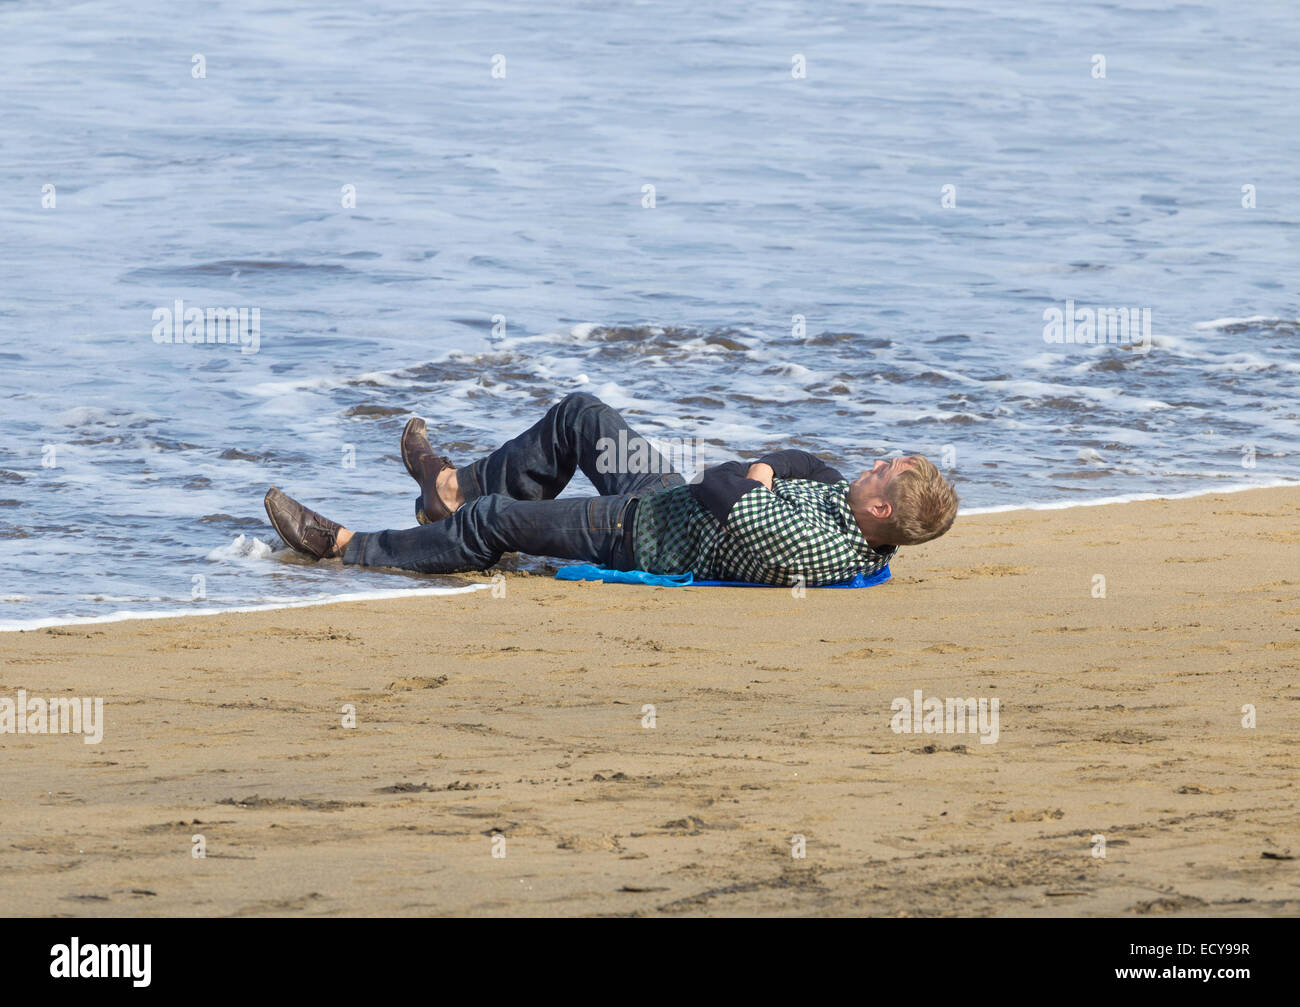 Mann dösen am Strand wird von der Flut getränkt. Stockfoto